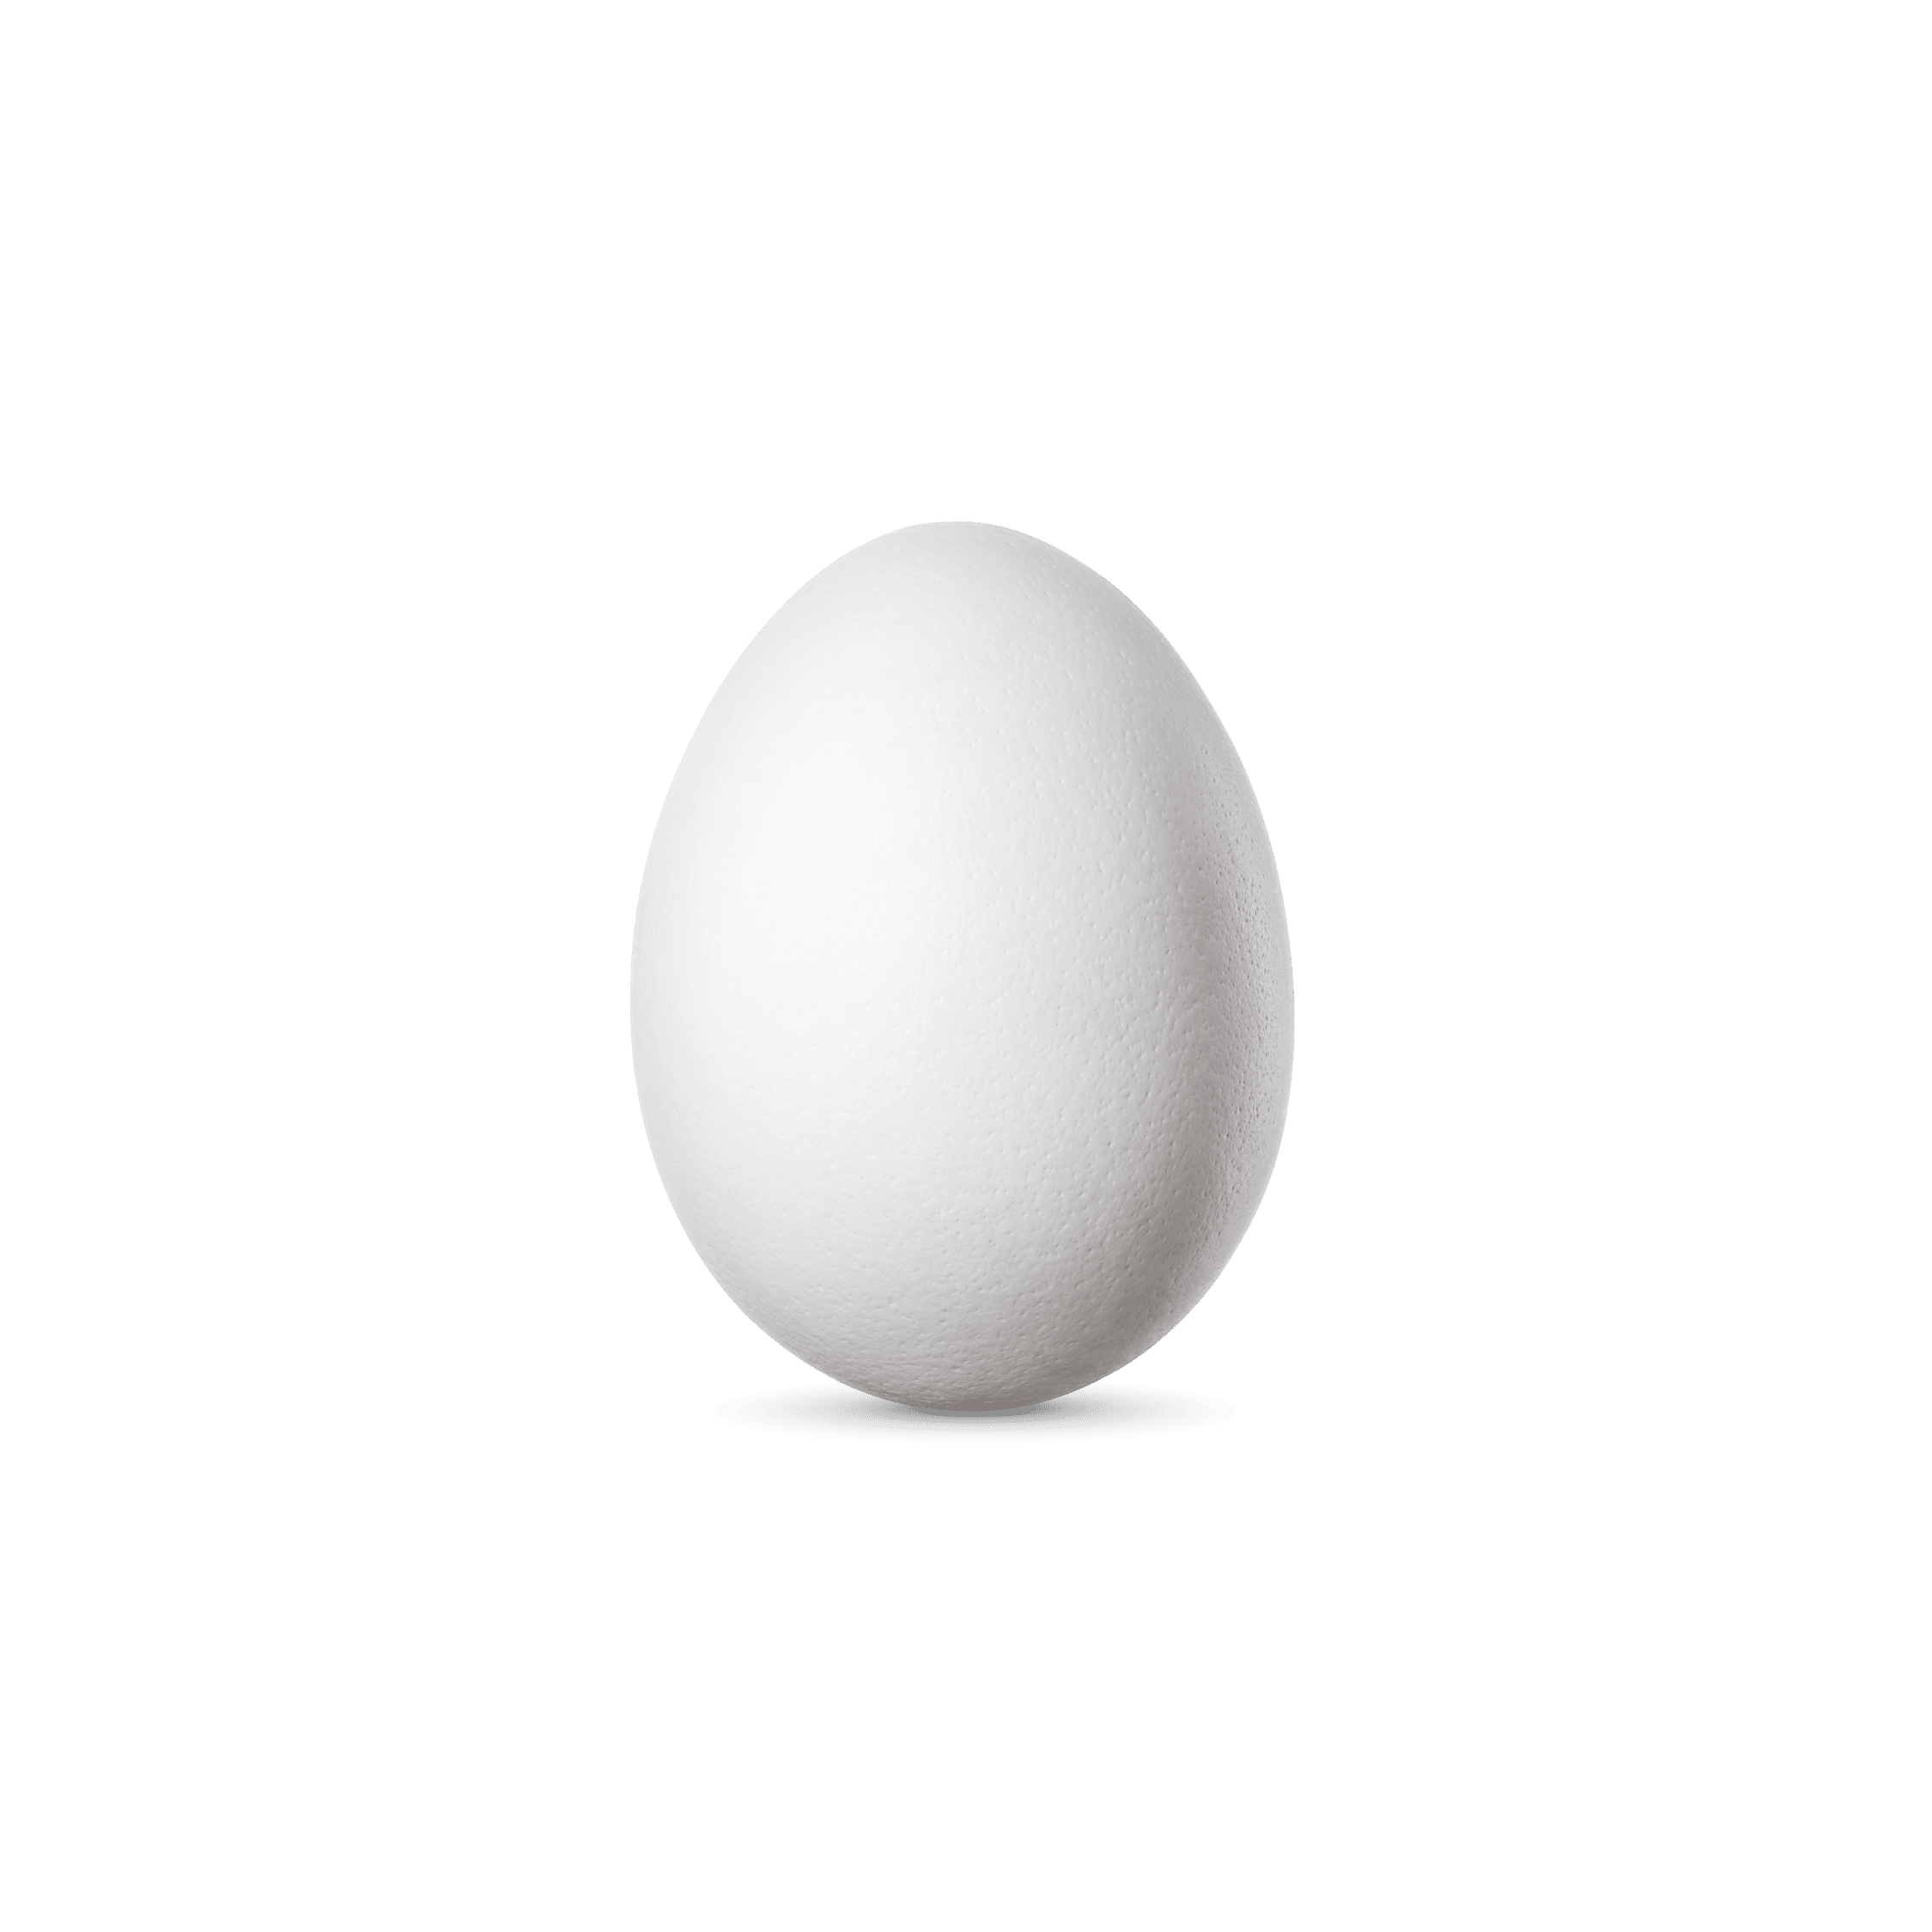 egg whites